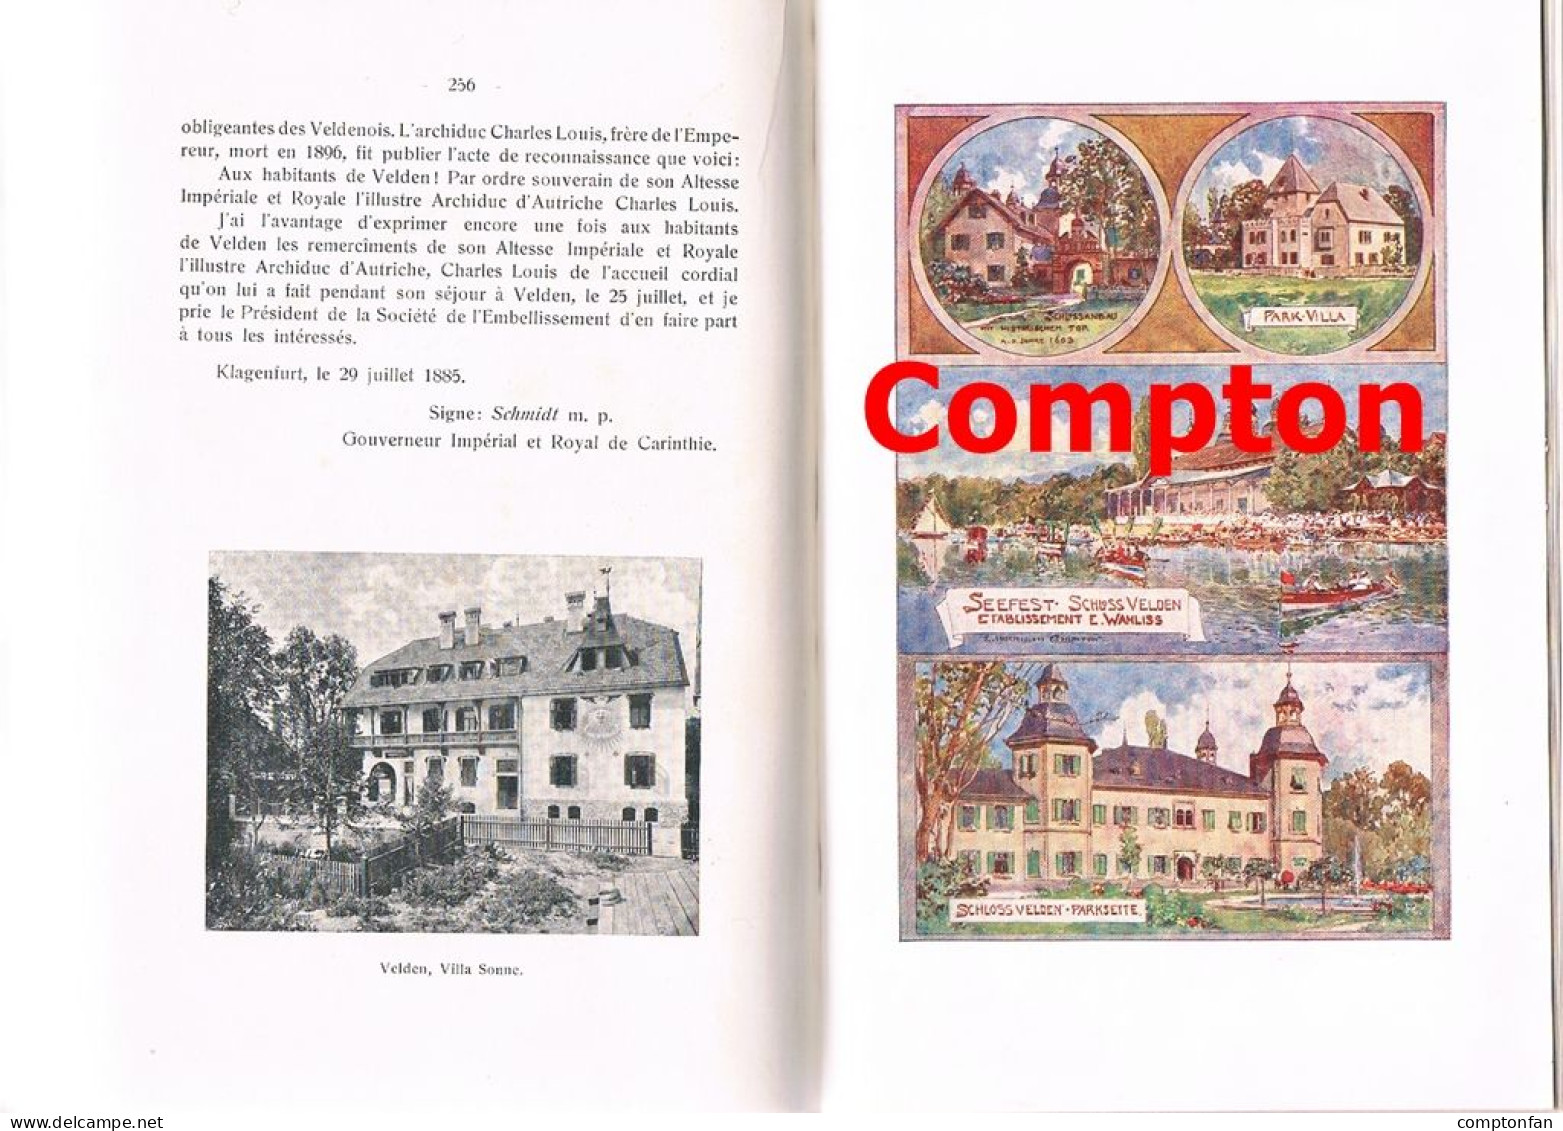 B100 872 Ehrenbuch Kurbad Velden Wörthersee Compton absolute Rarität 1905 !!